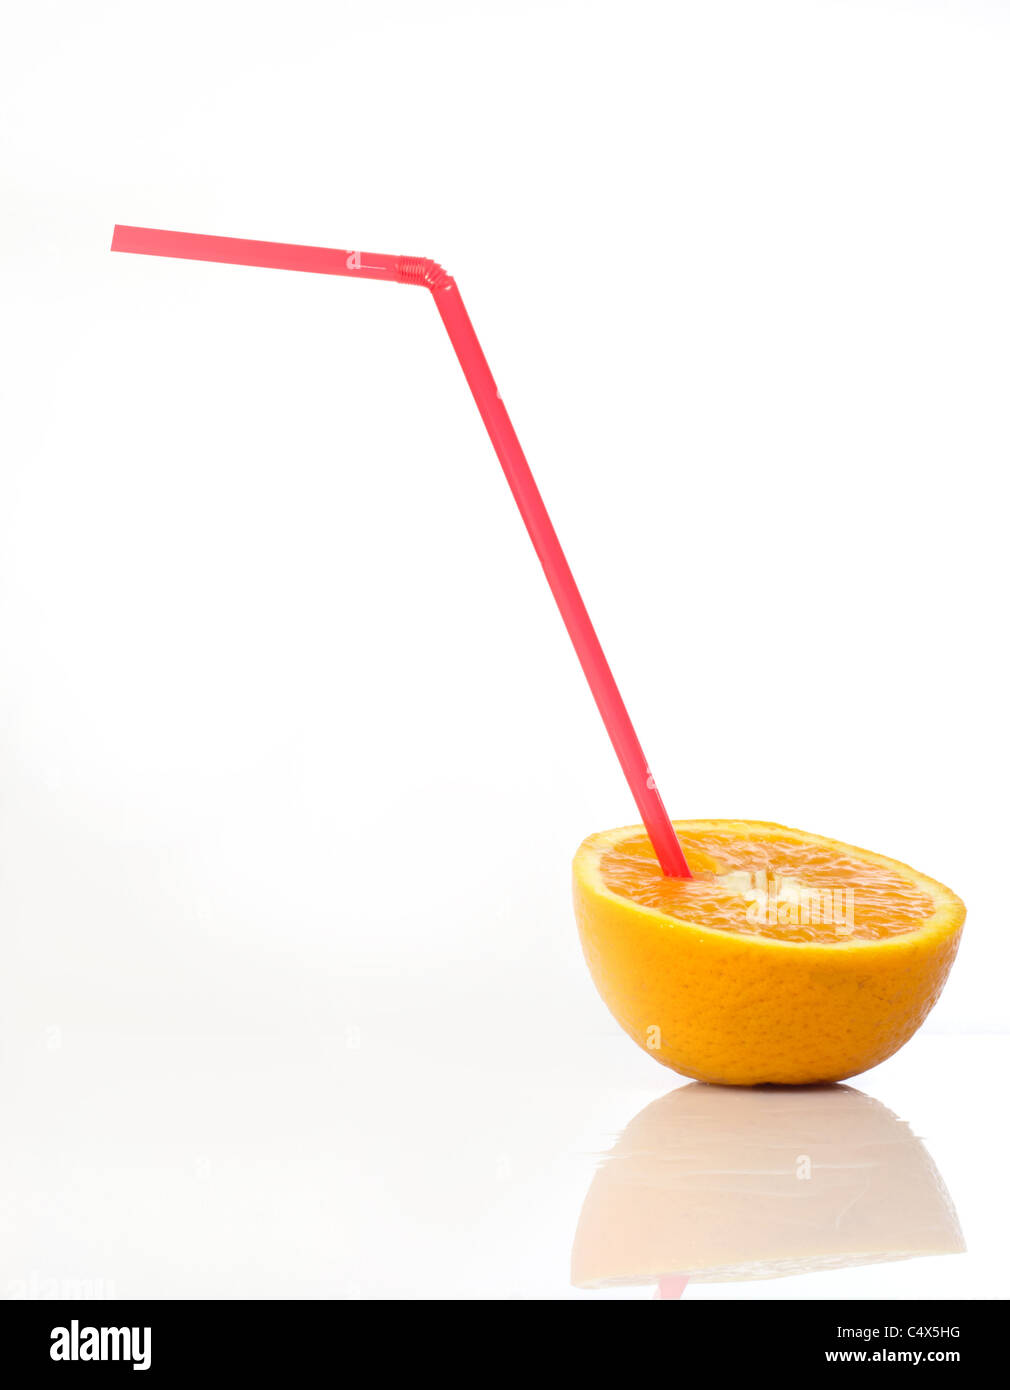 orange with a straw Stock Photo